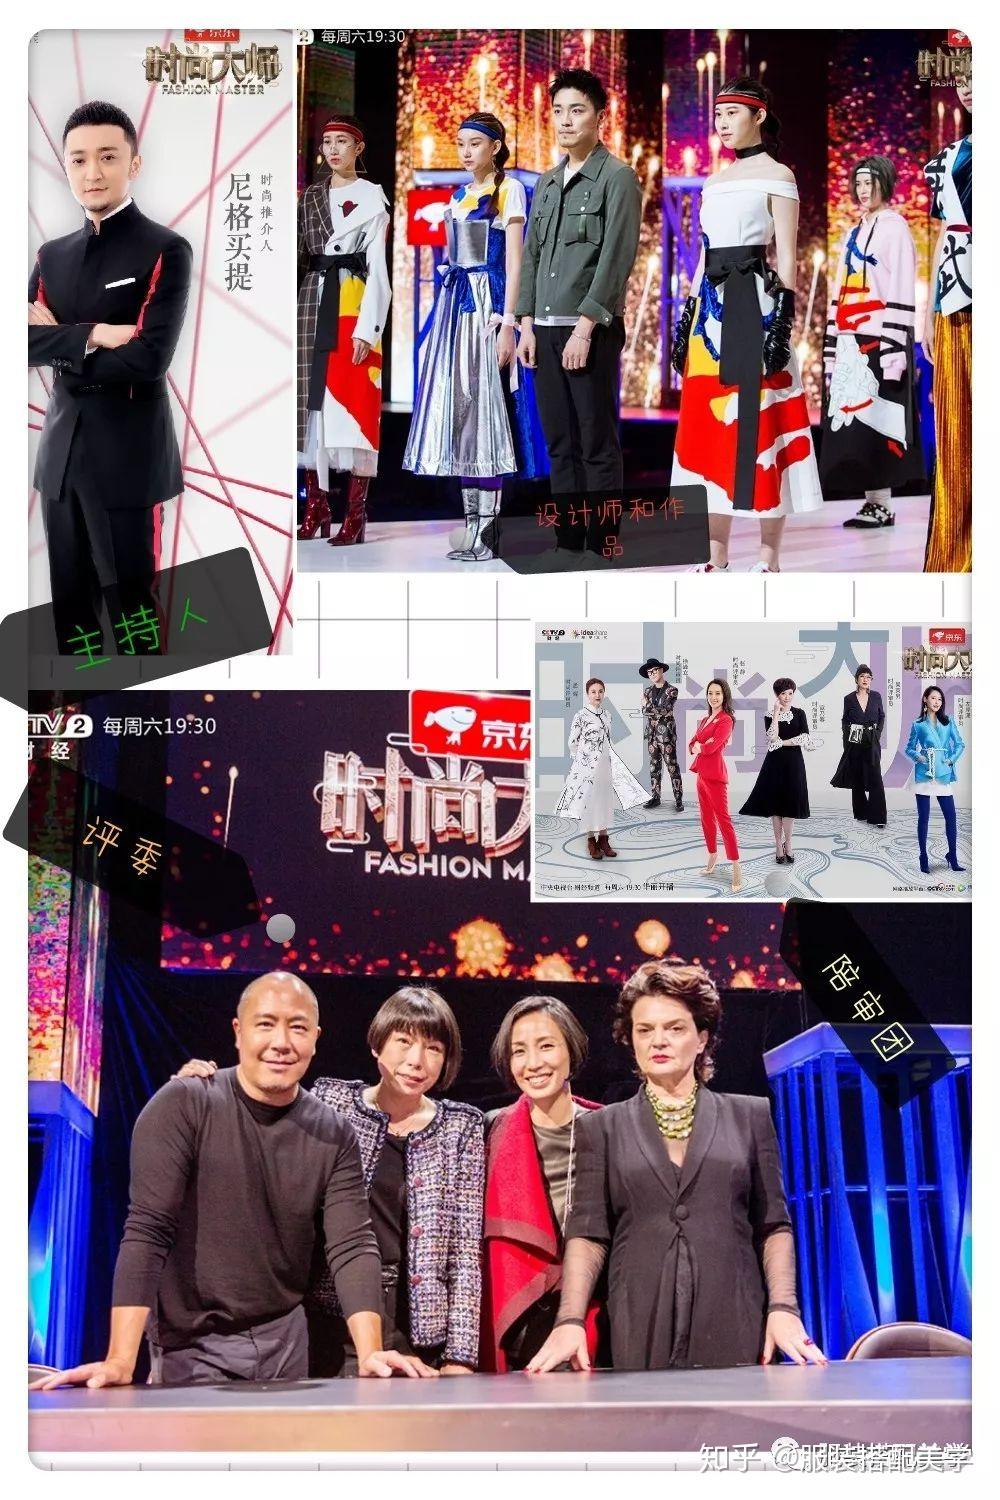 如何看待央视新综艺《时尚大师》? 